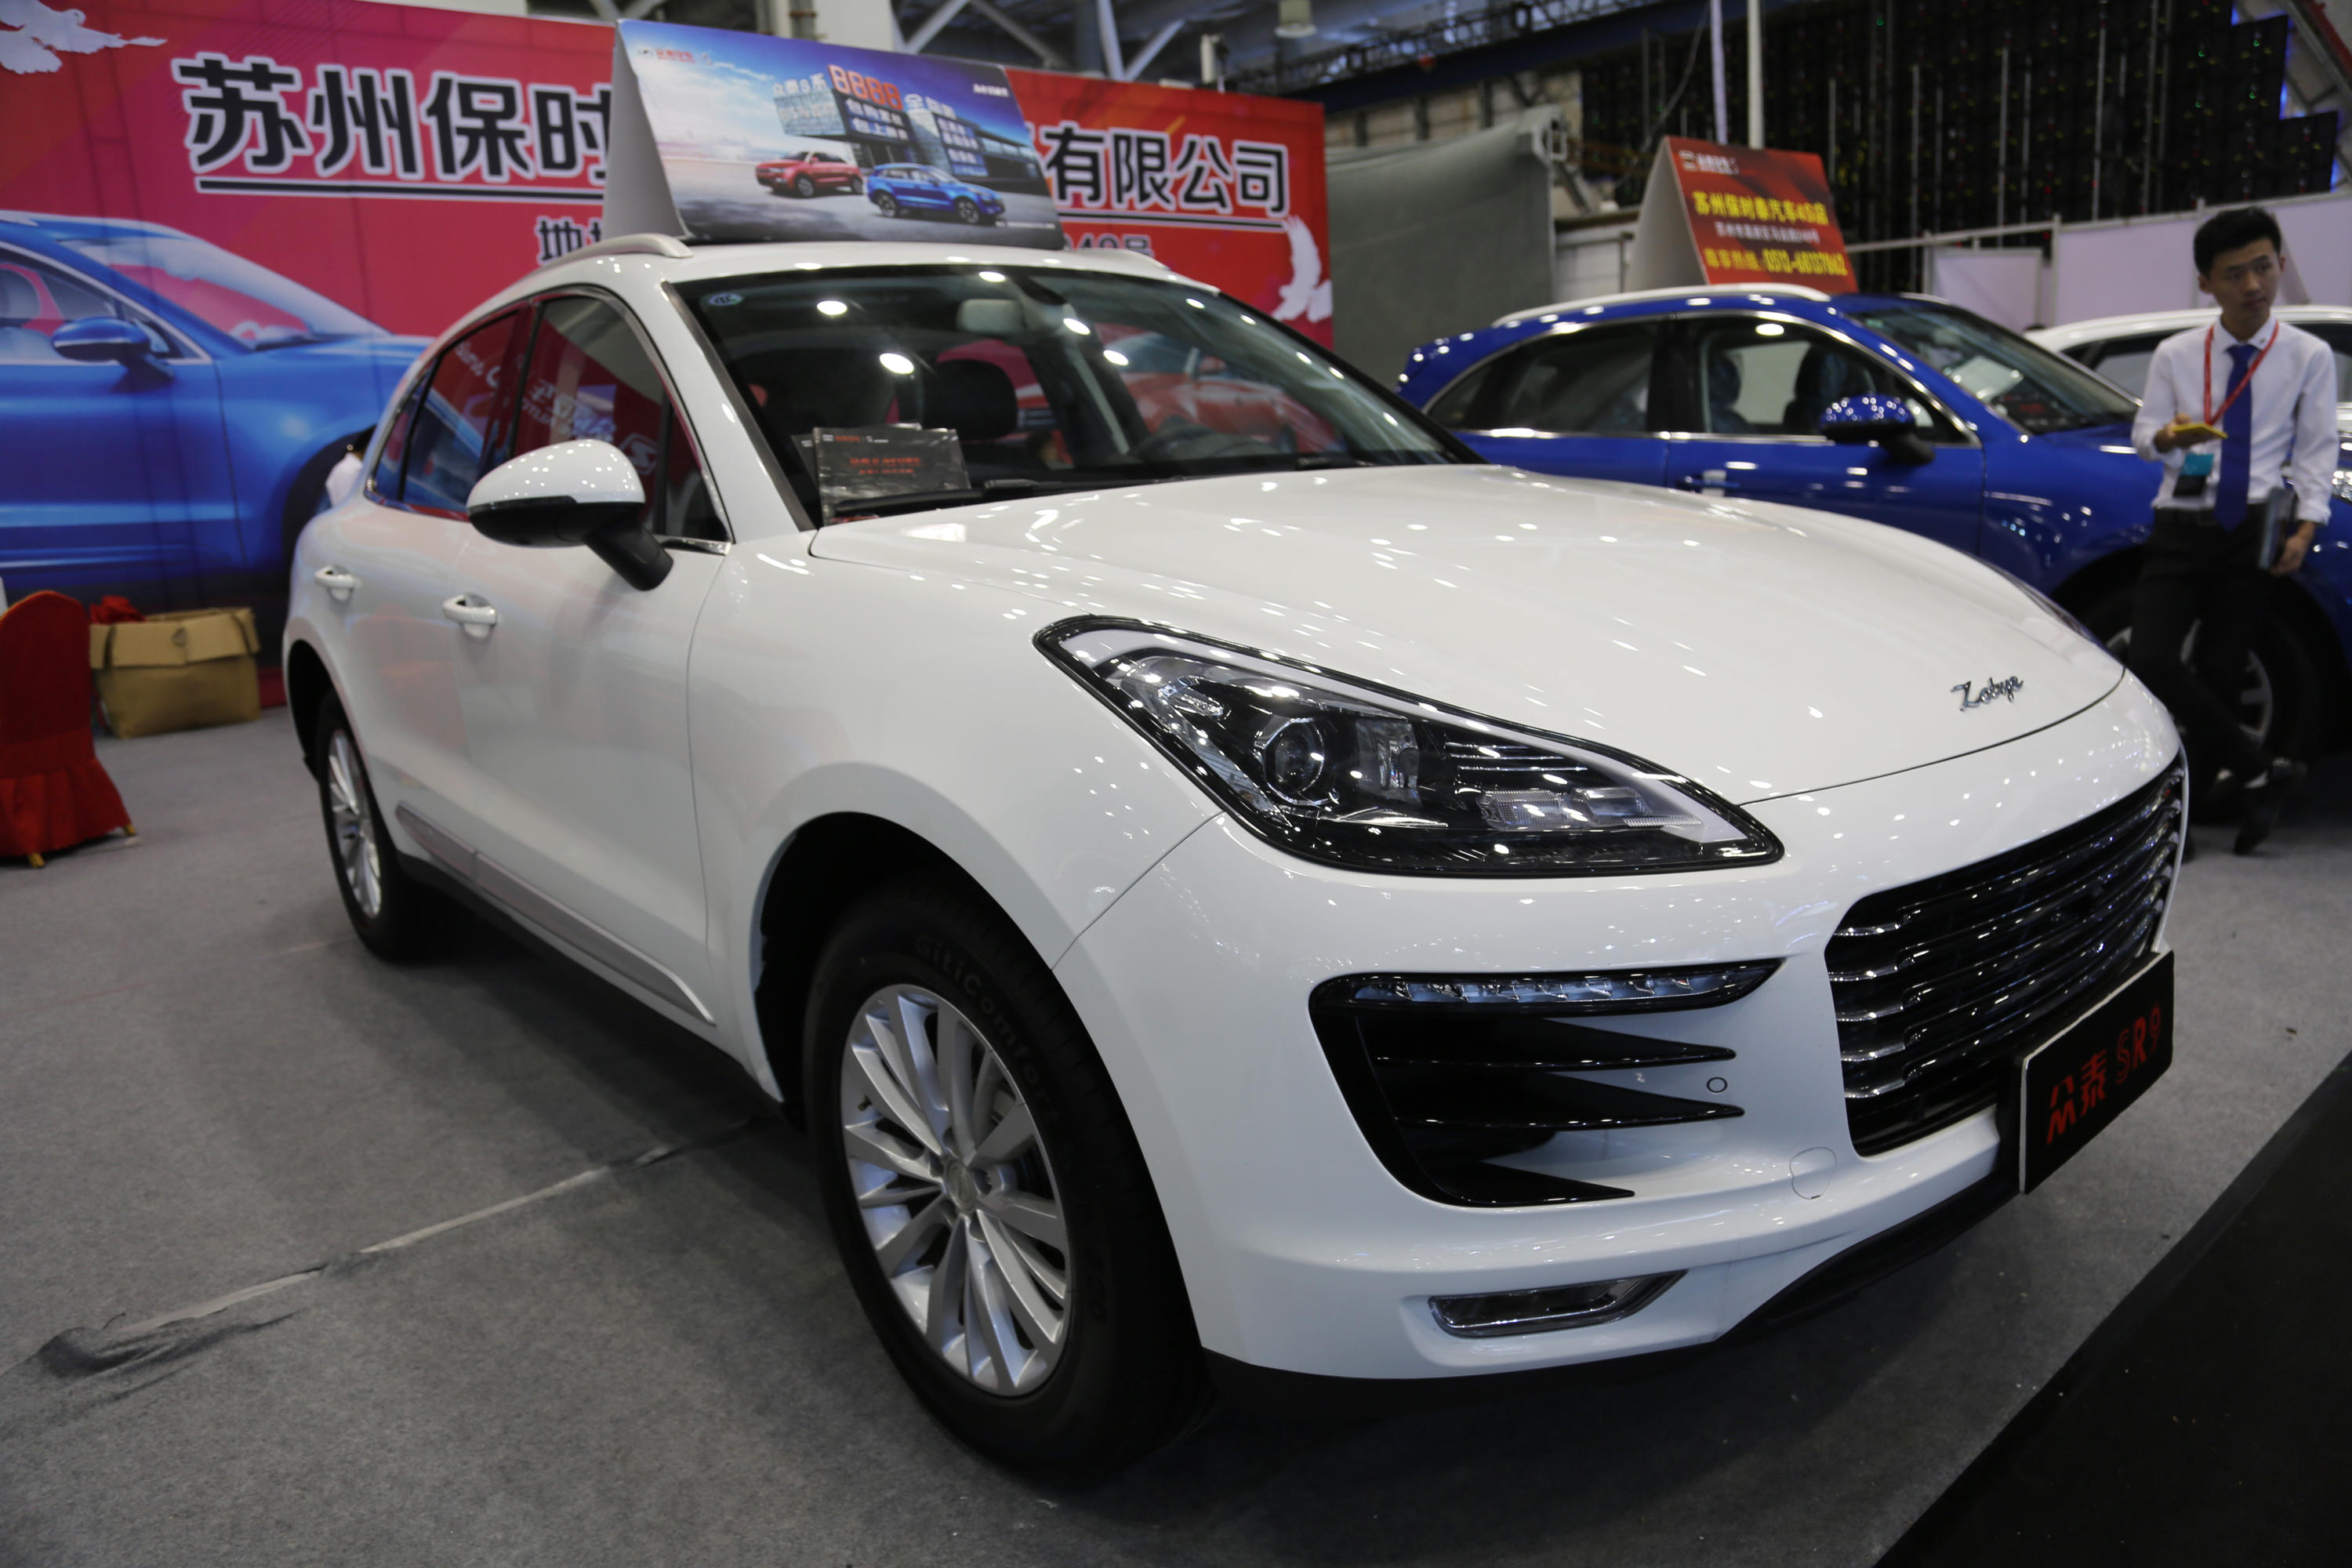 作为"中国首款轿跑suv"的众泰sr9,外观采用了潮流动感的轿跑造型,类似